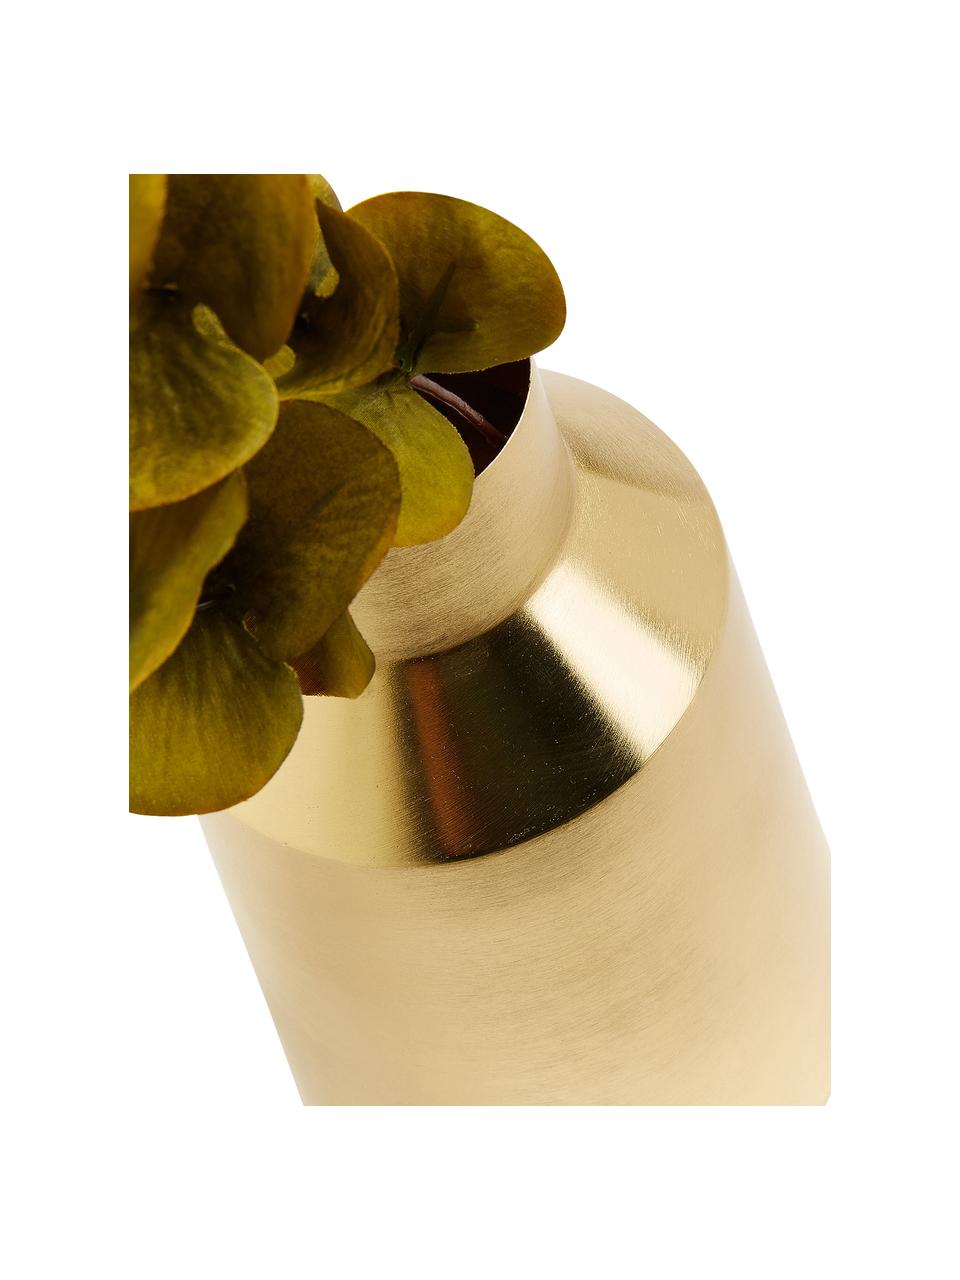 Vaso di design in metallo dorato Carlyn, Metallo rivestito, Ottonato, Ø 15 x Alt. 26 cm